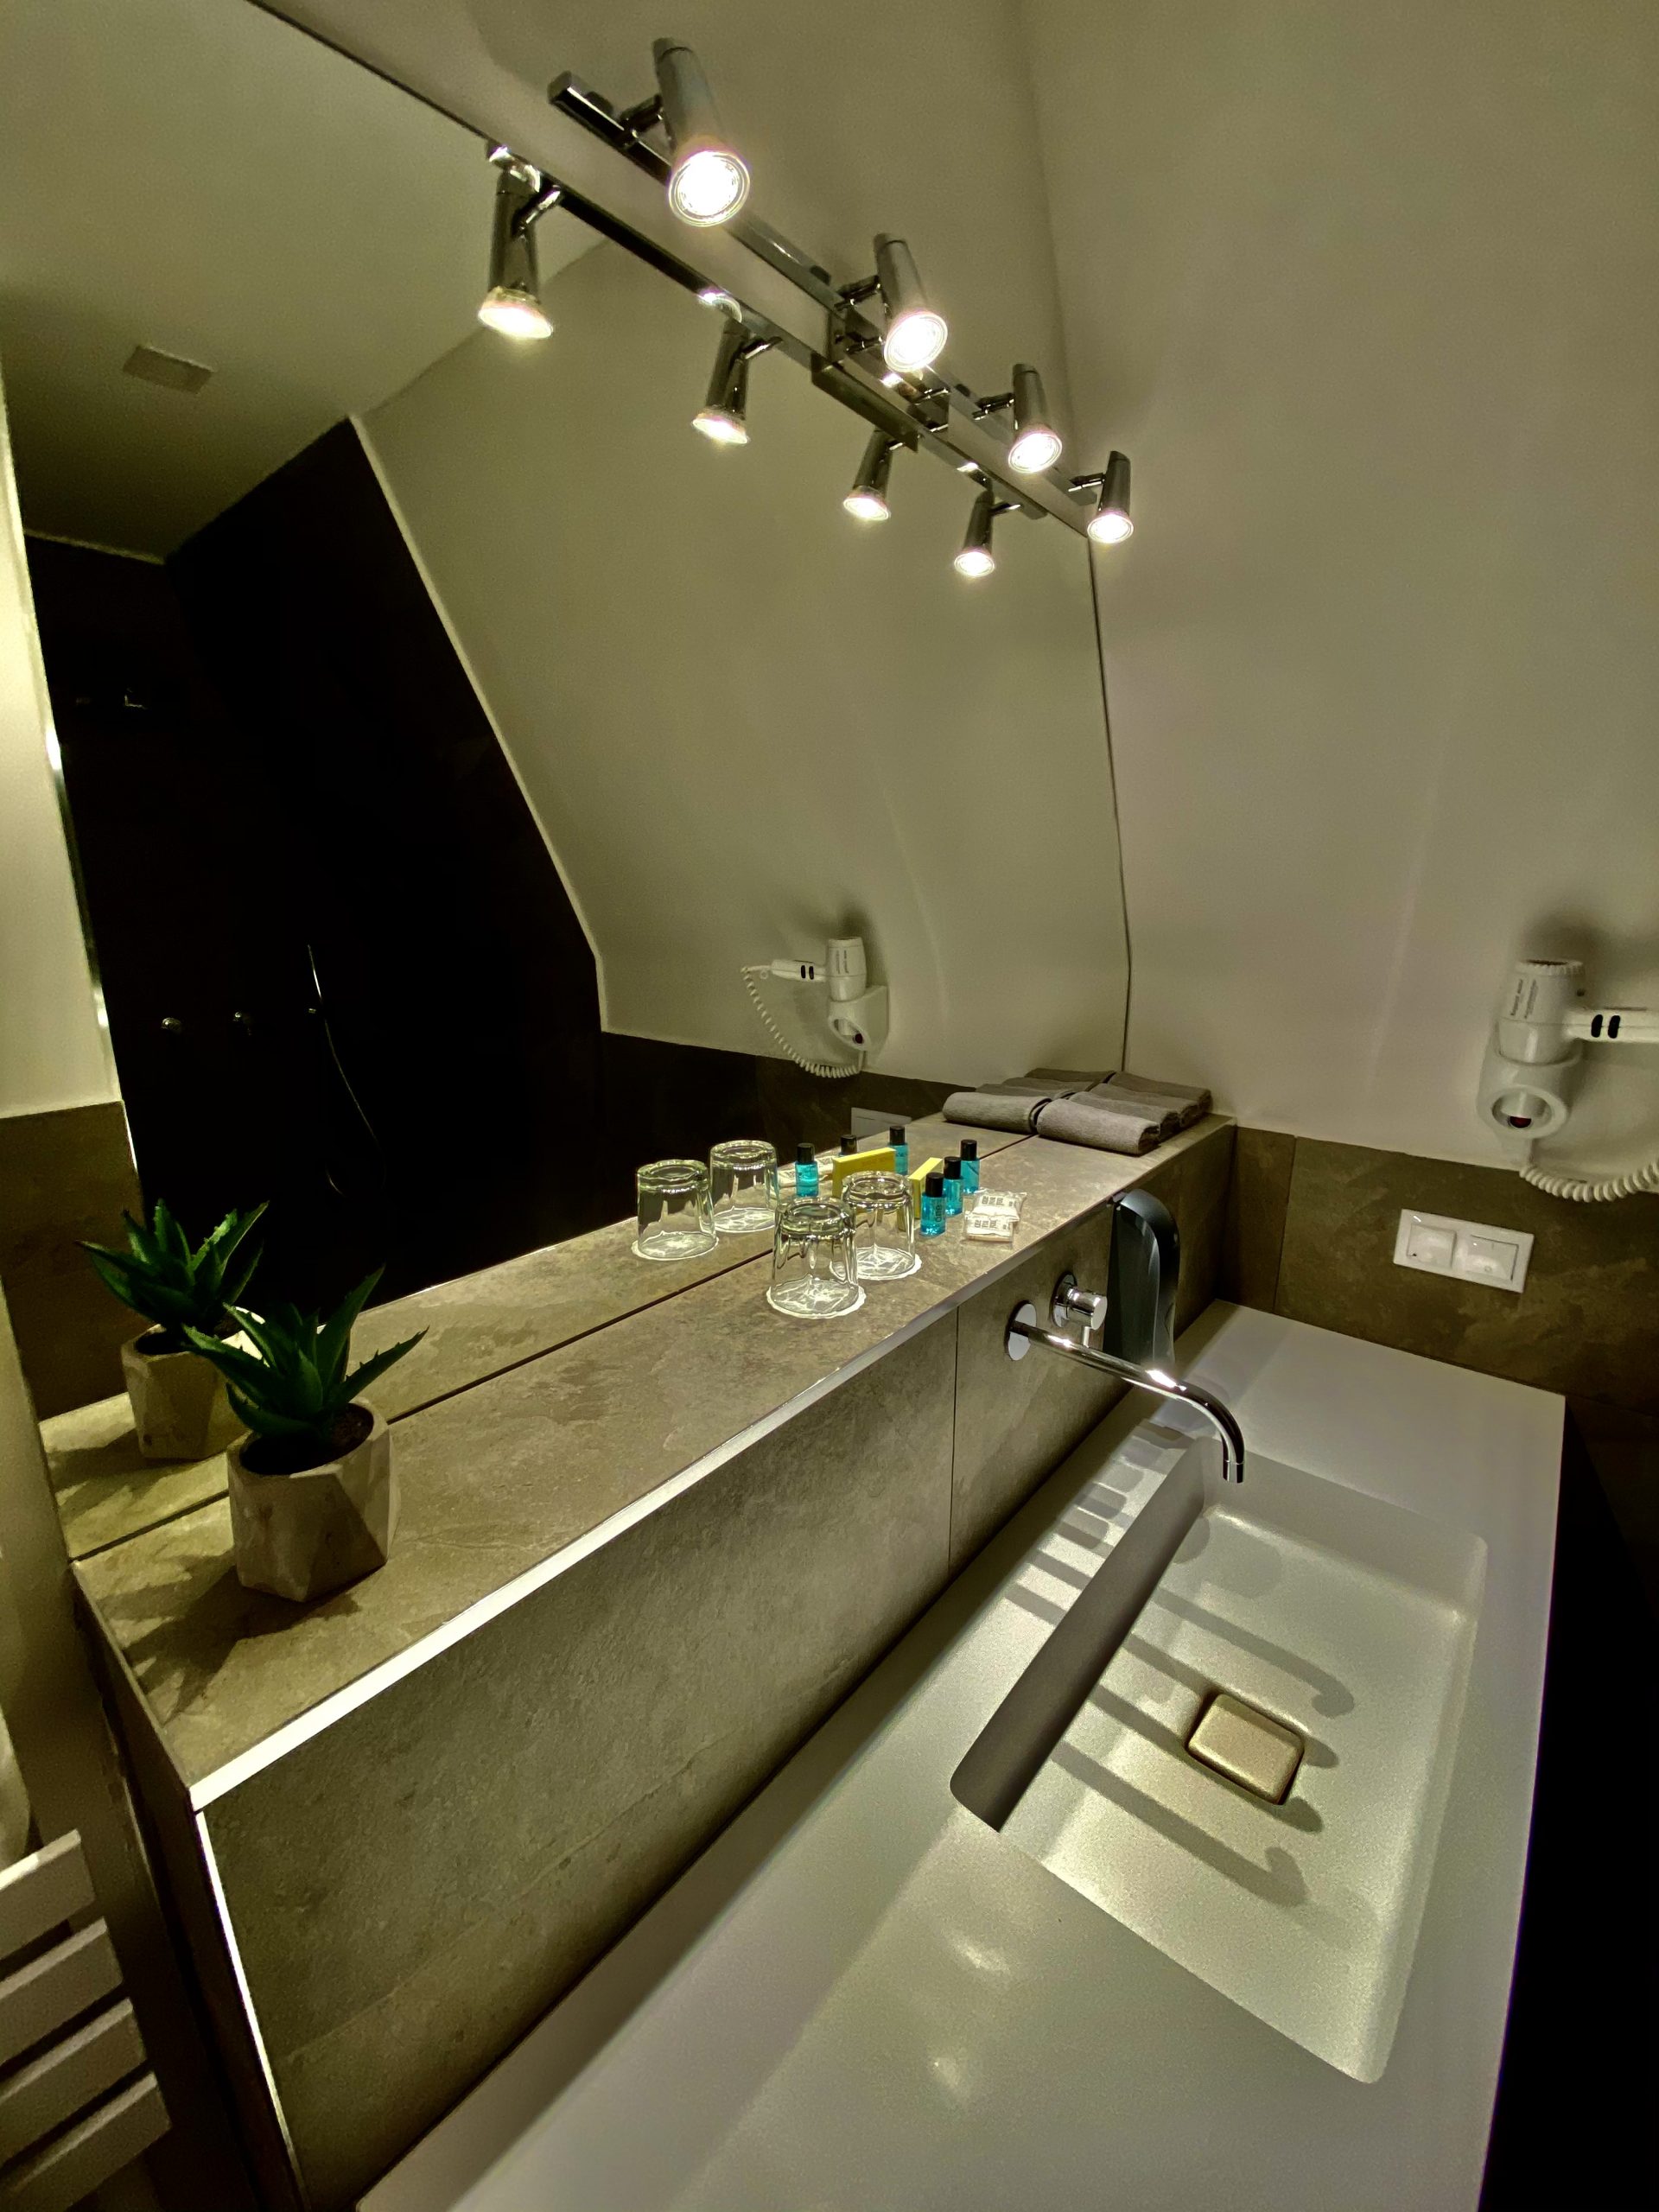 Deluxe fürdőszoba